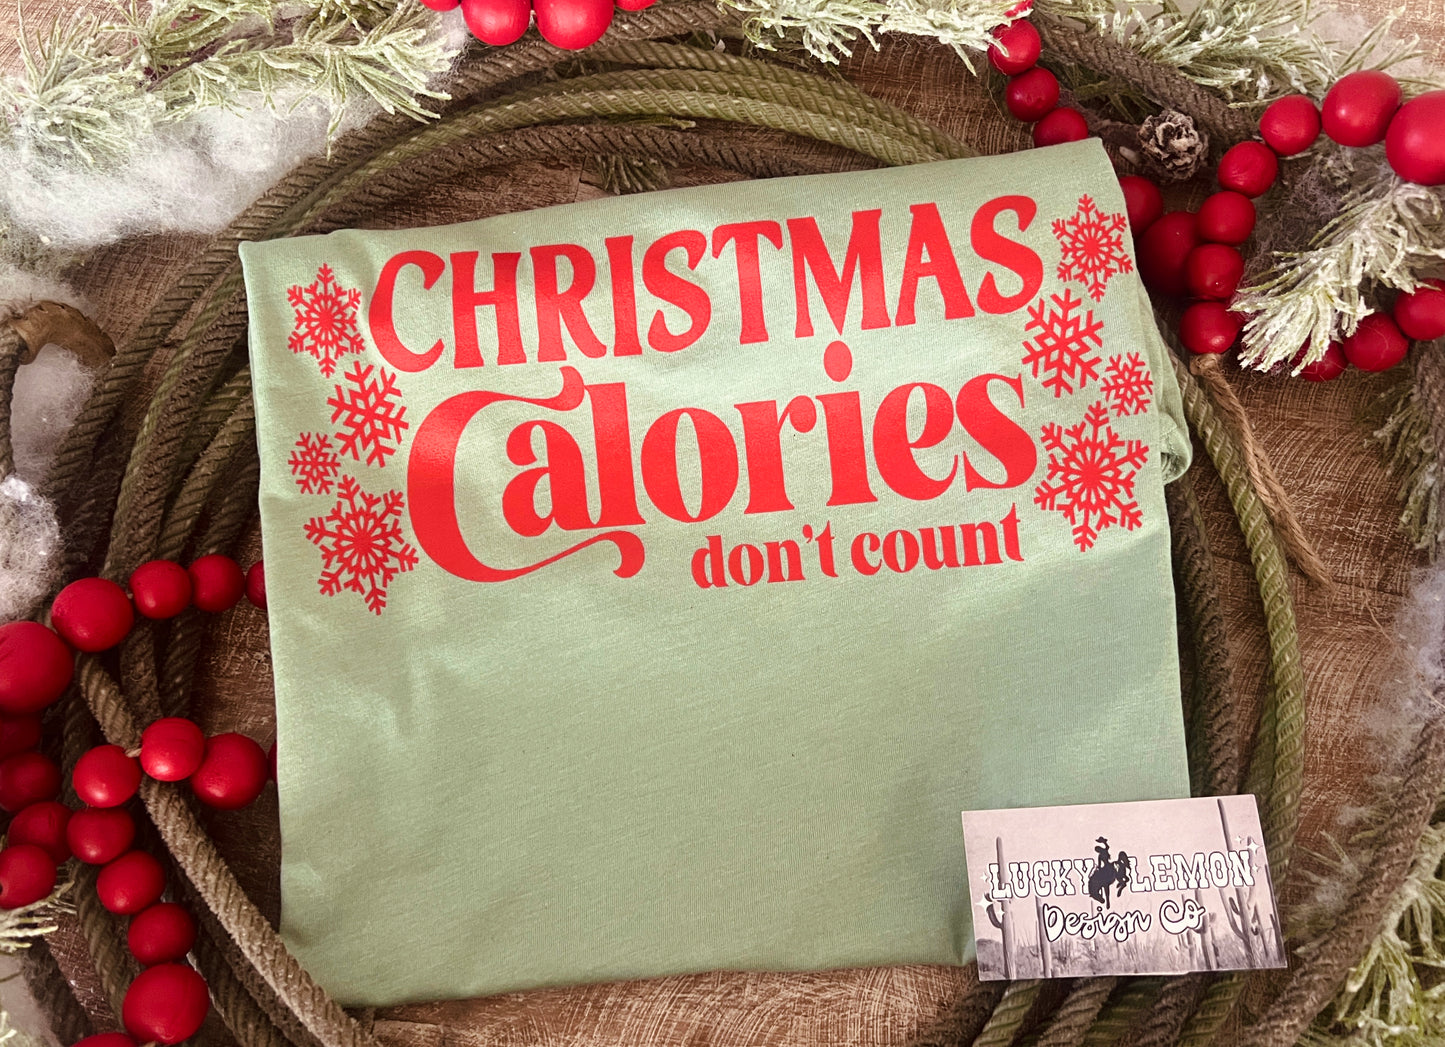 Christmas Calories Tshirt